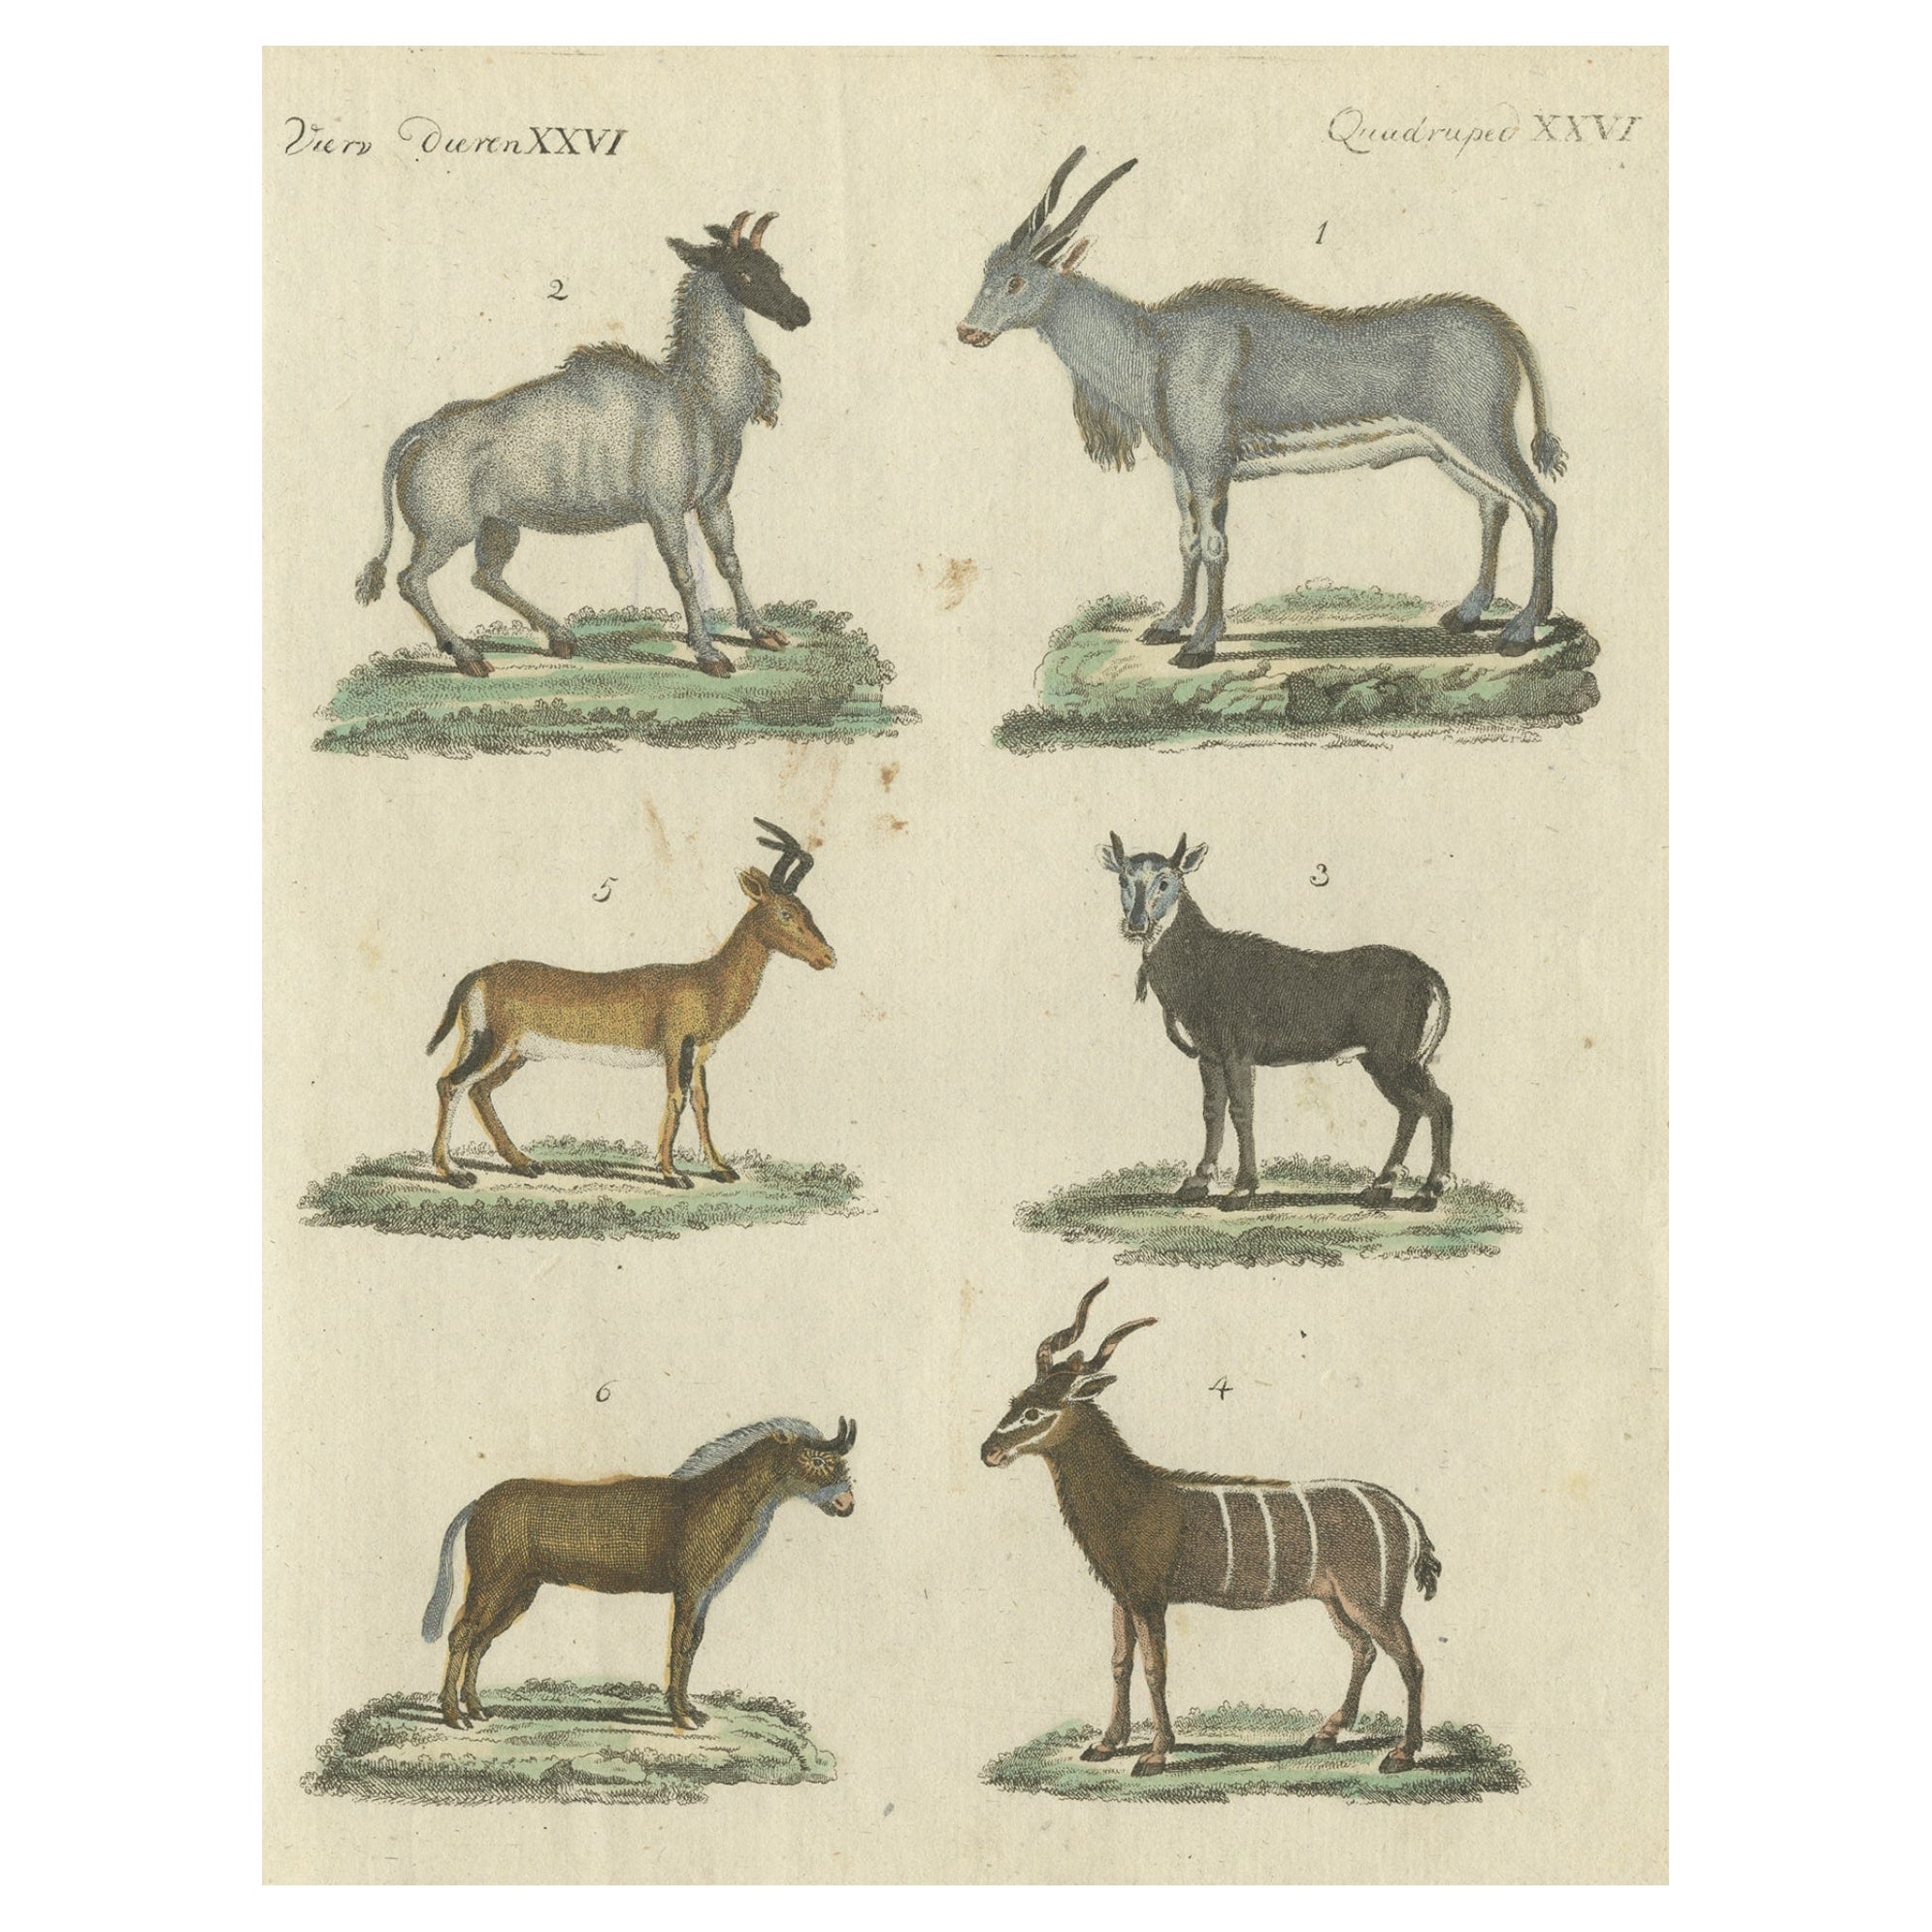 Impressions d'animaux antiques en coloration à la main ancienne, publiées en 1800